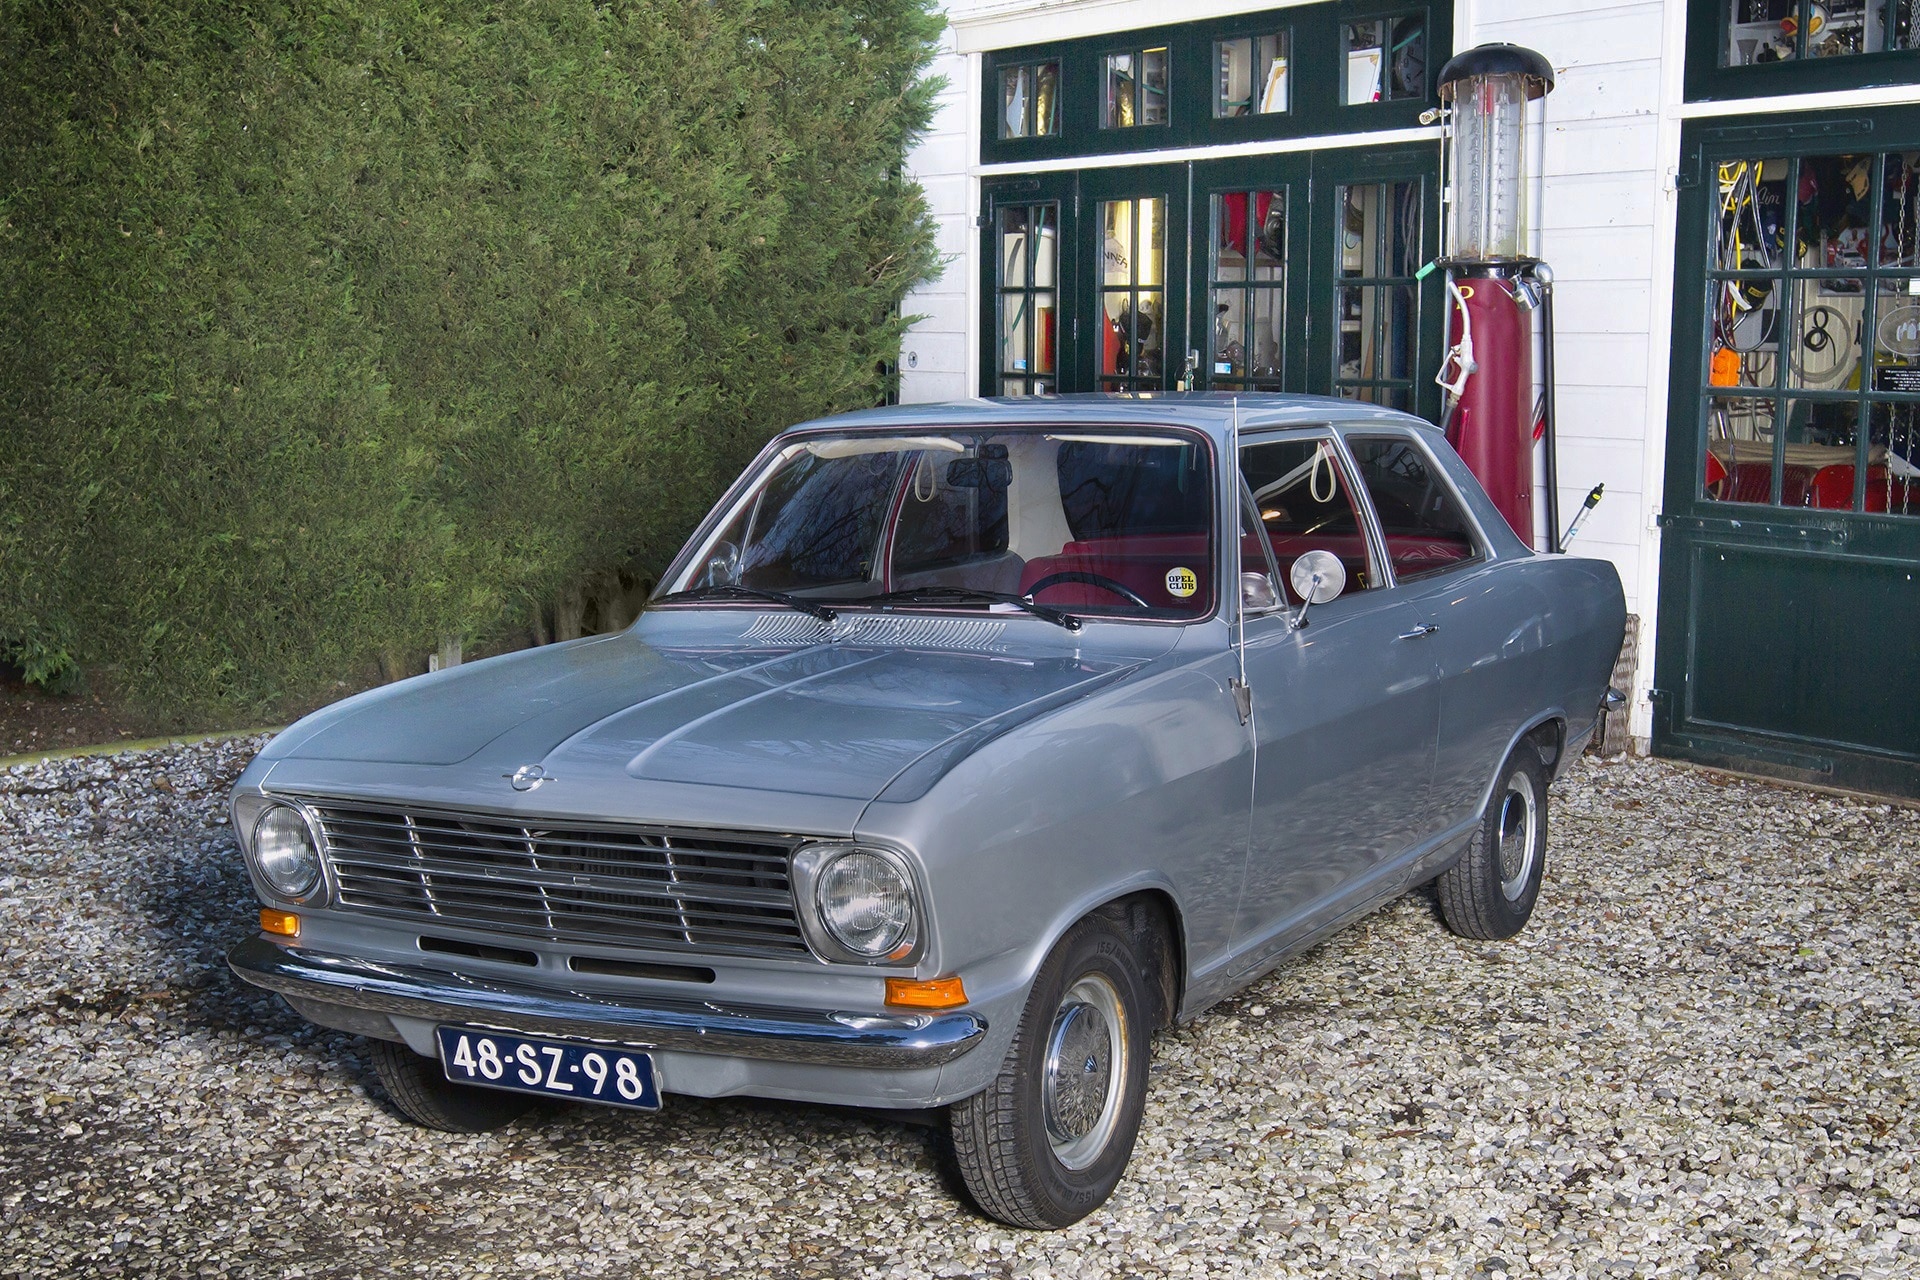 Opel Kadett B uit 1971 staat klaar voor een klassiekerrit